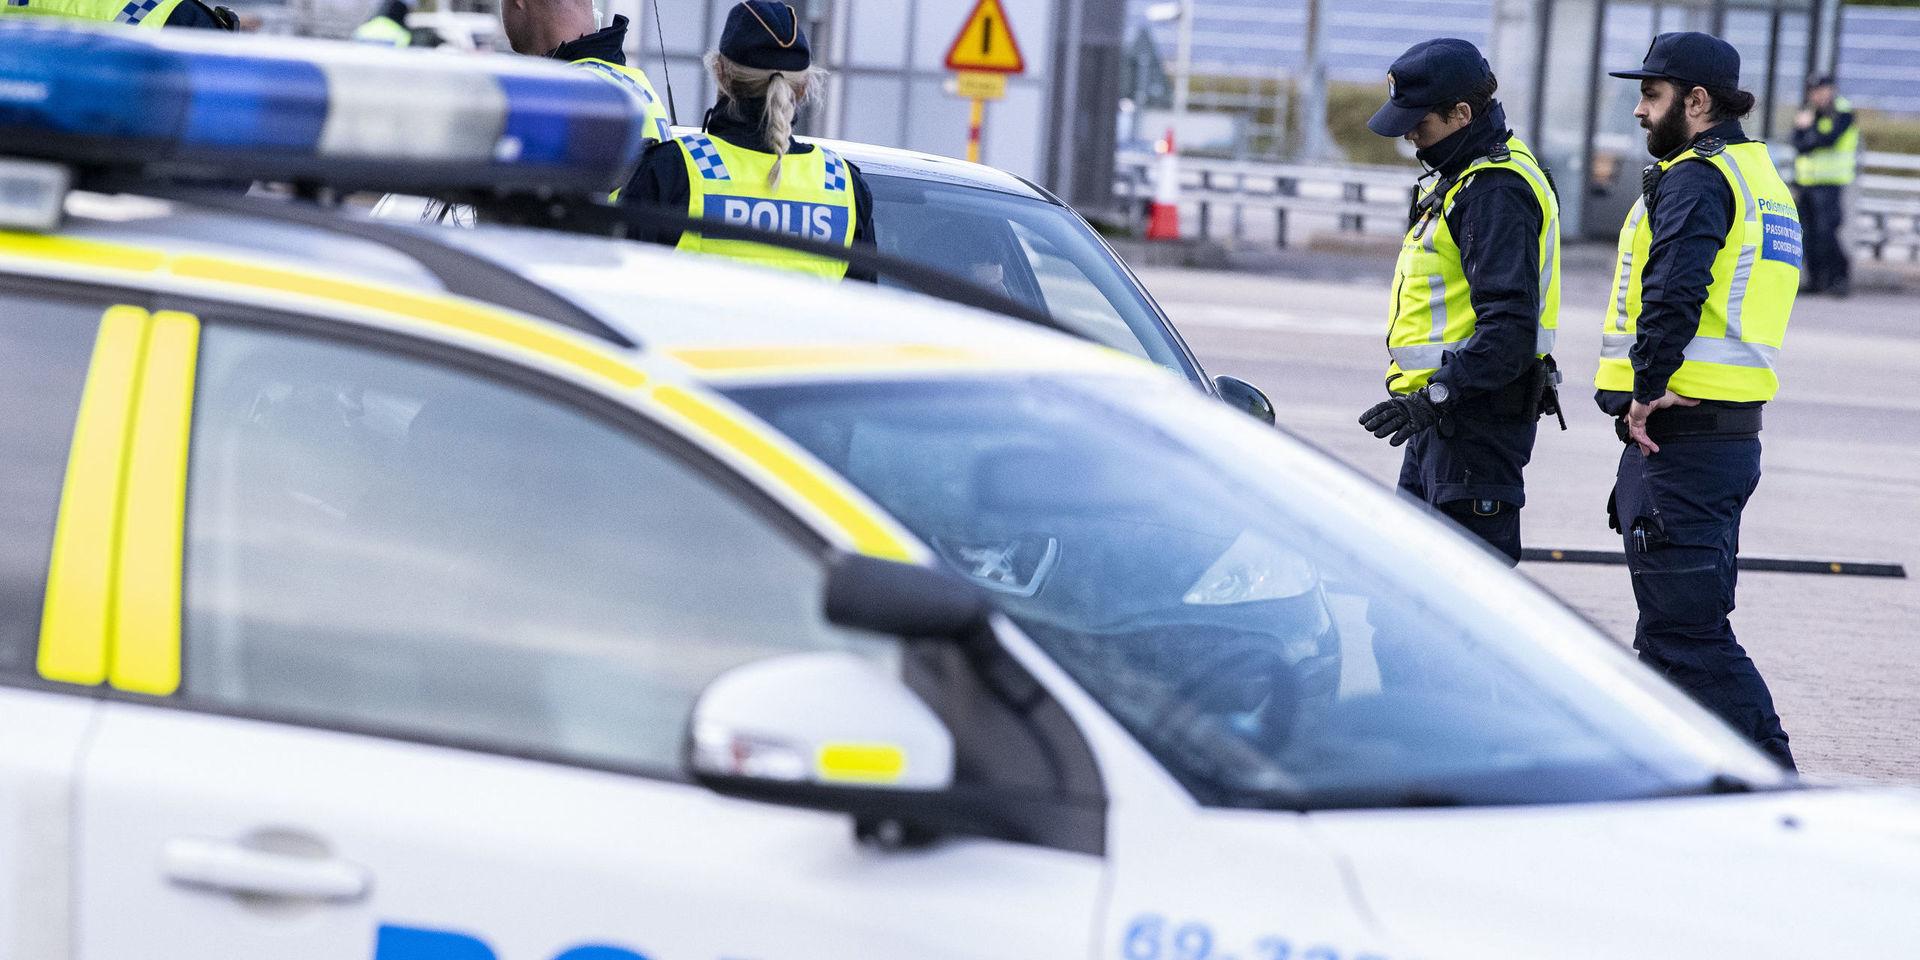 Polis och passkontrollanter genomför id-kontroll Öresundsbrons betalstation på Lernacken. Arkivbild.